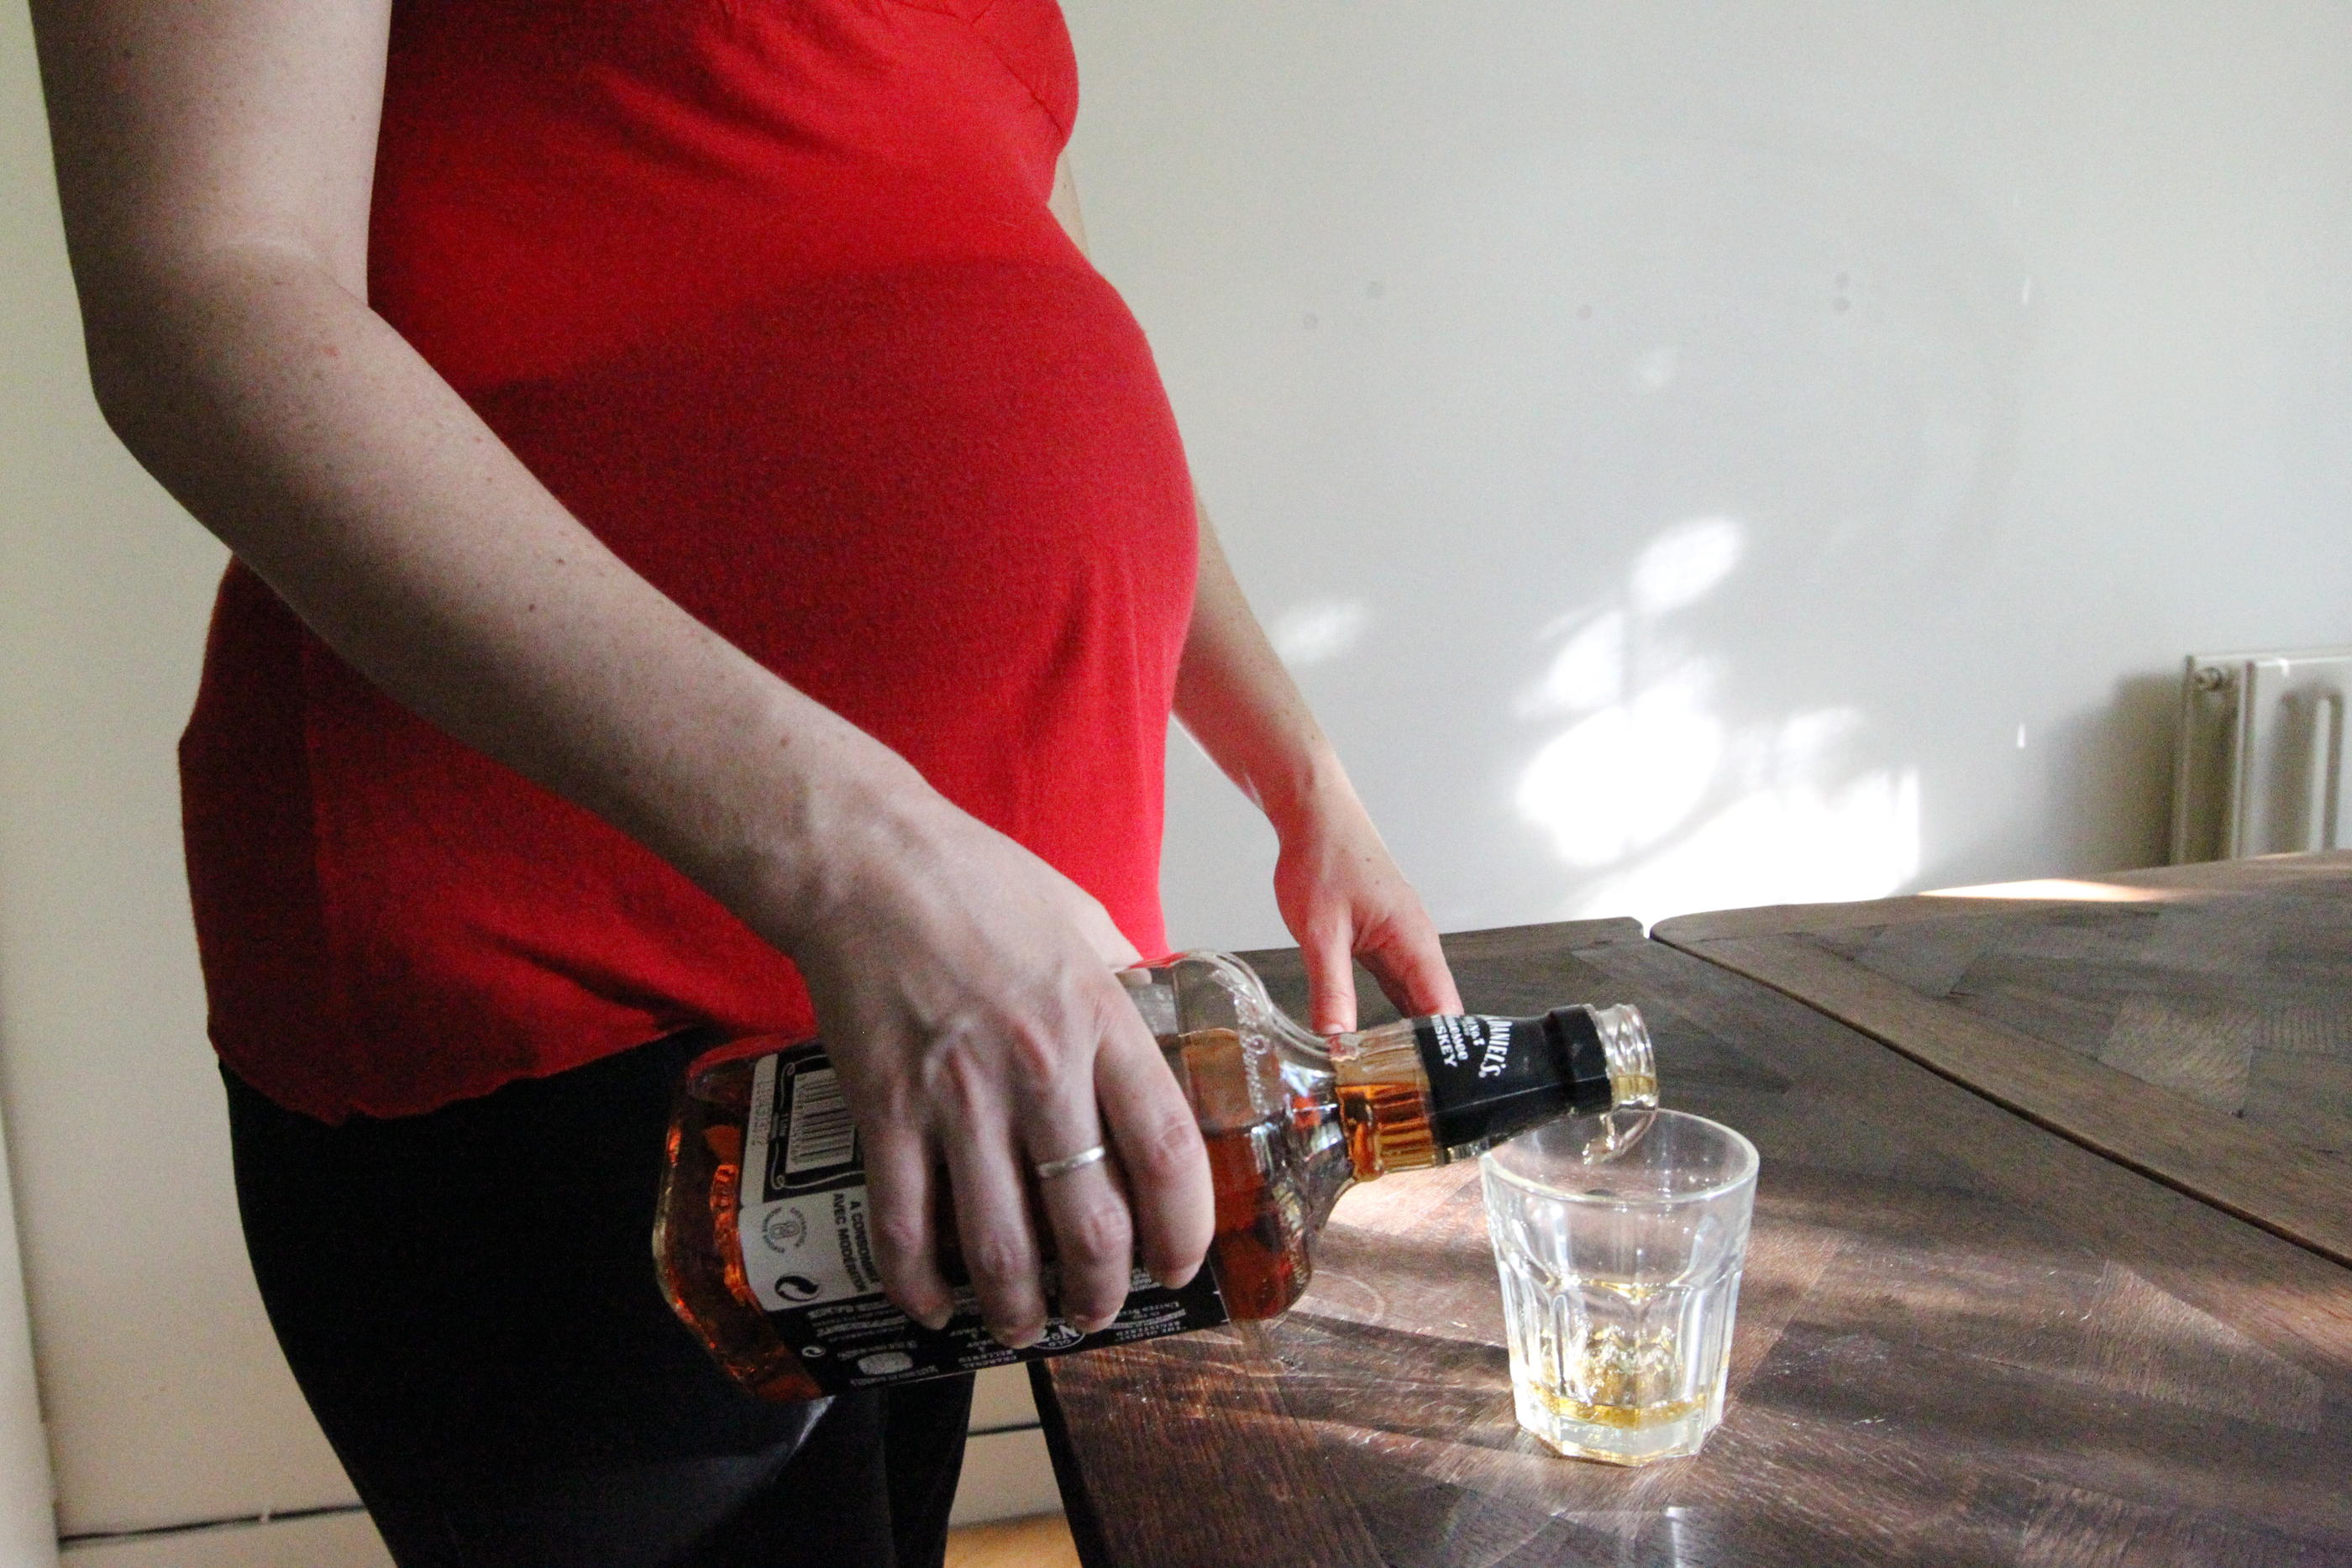 La consommation d'alcool pendant la grossesse peut avoir de graves conséquences morphologiques et cognitives sur le fœtus. LP/Jean-Baptiste Quentin